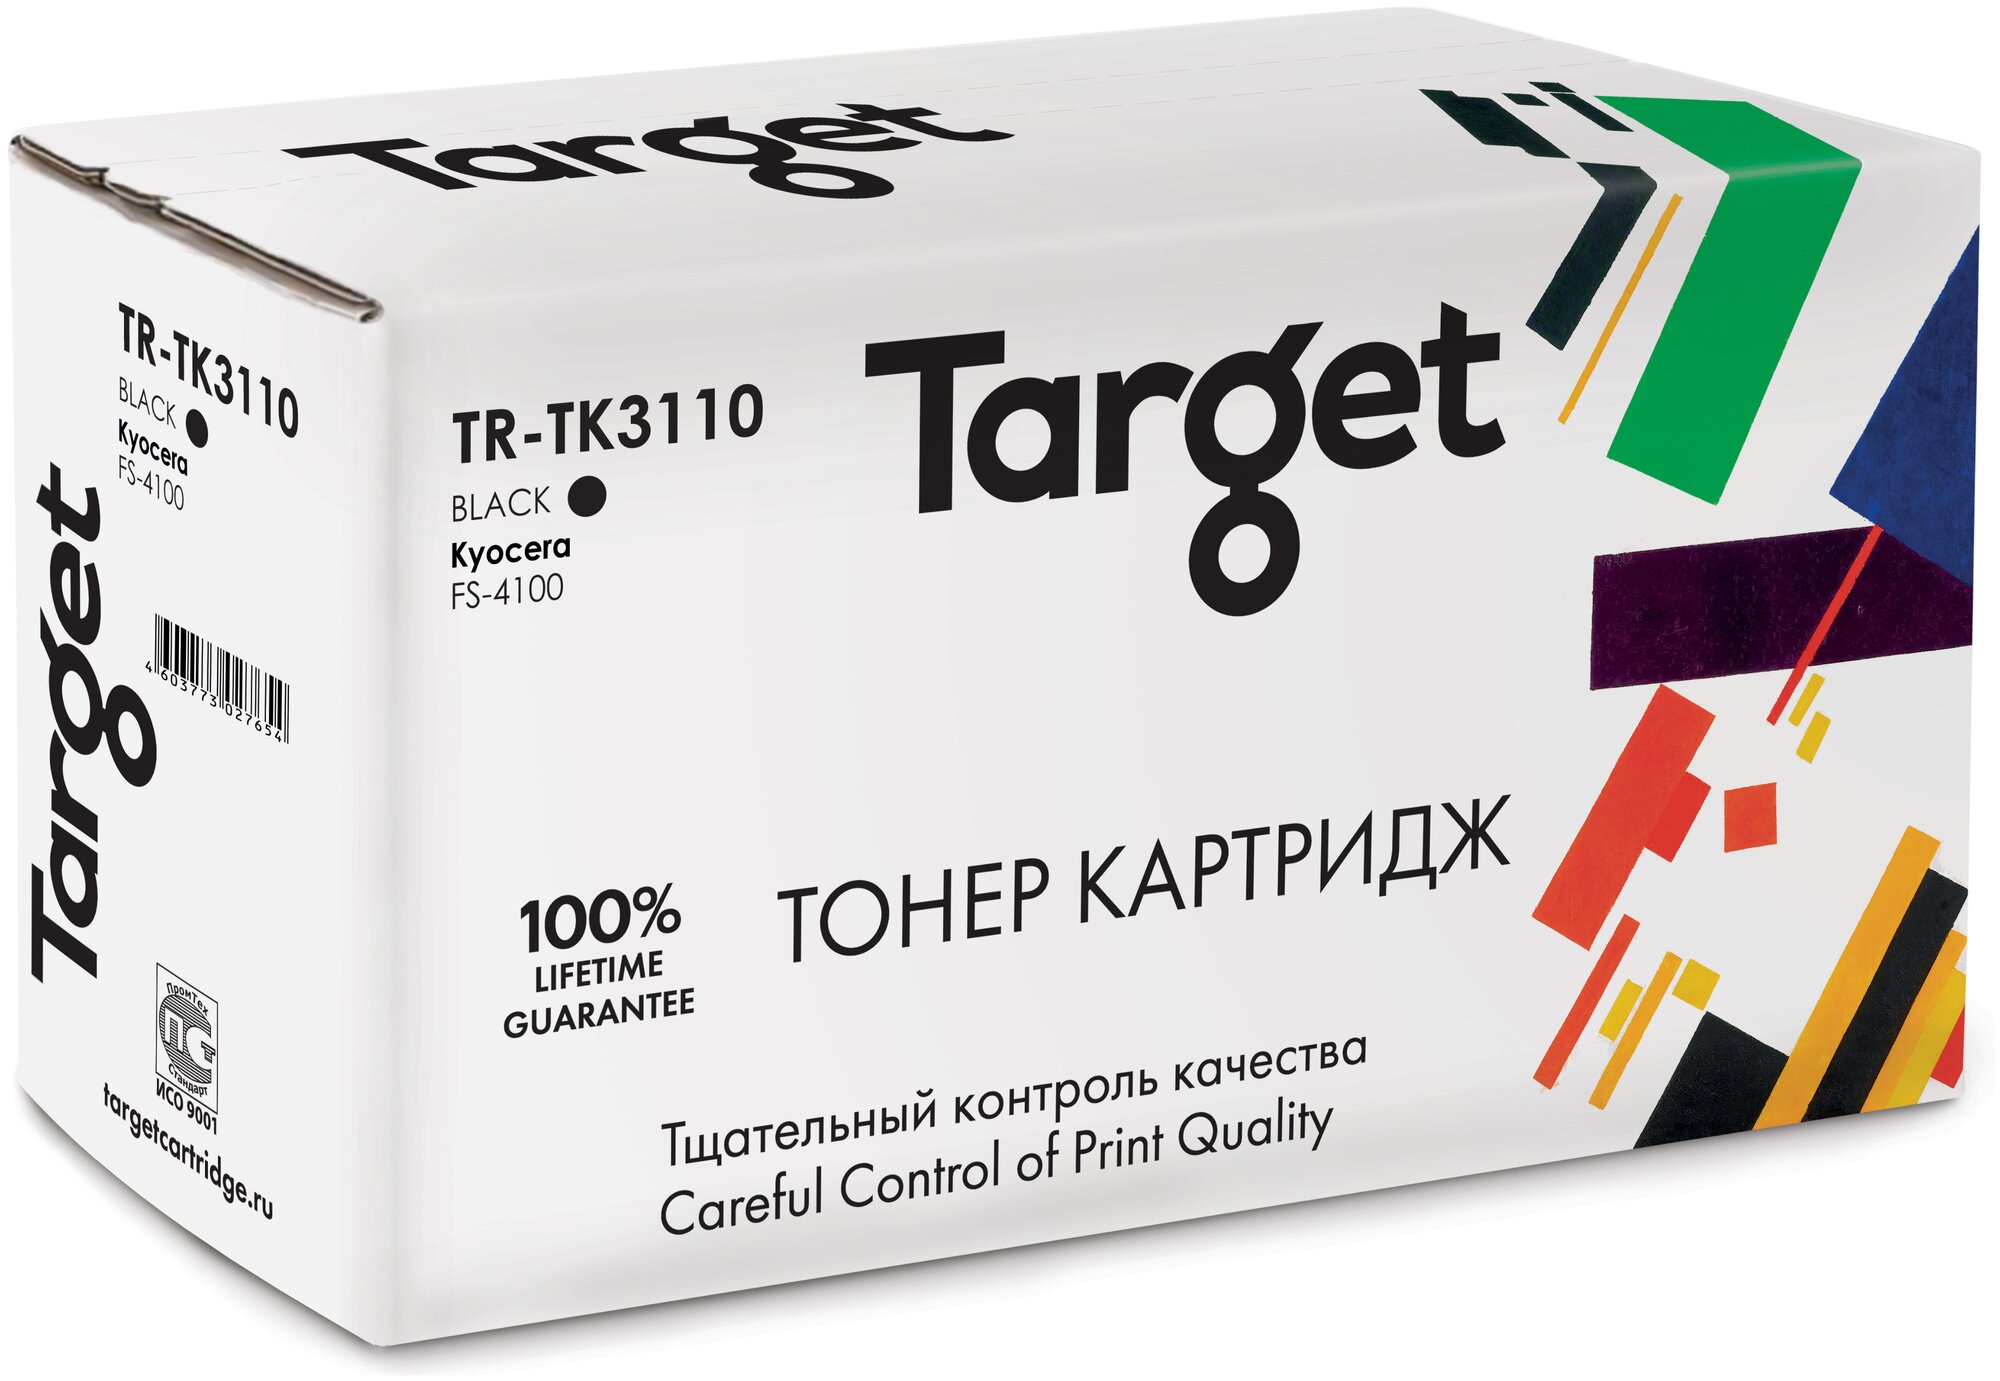 Тонер-картридж Target TK3110, черный, для лазерного принтера, совместимый